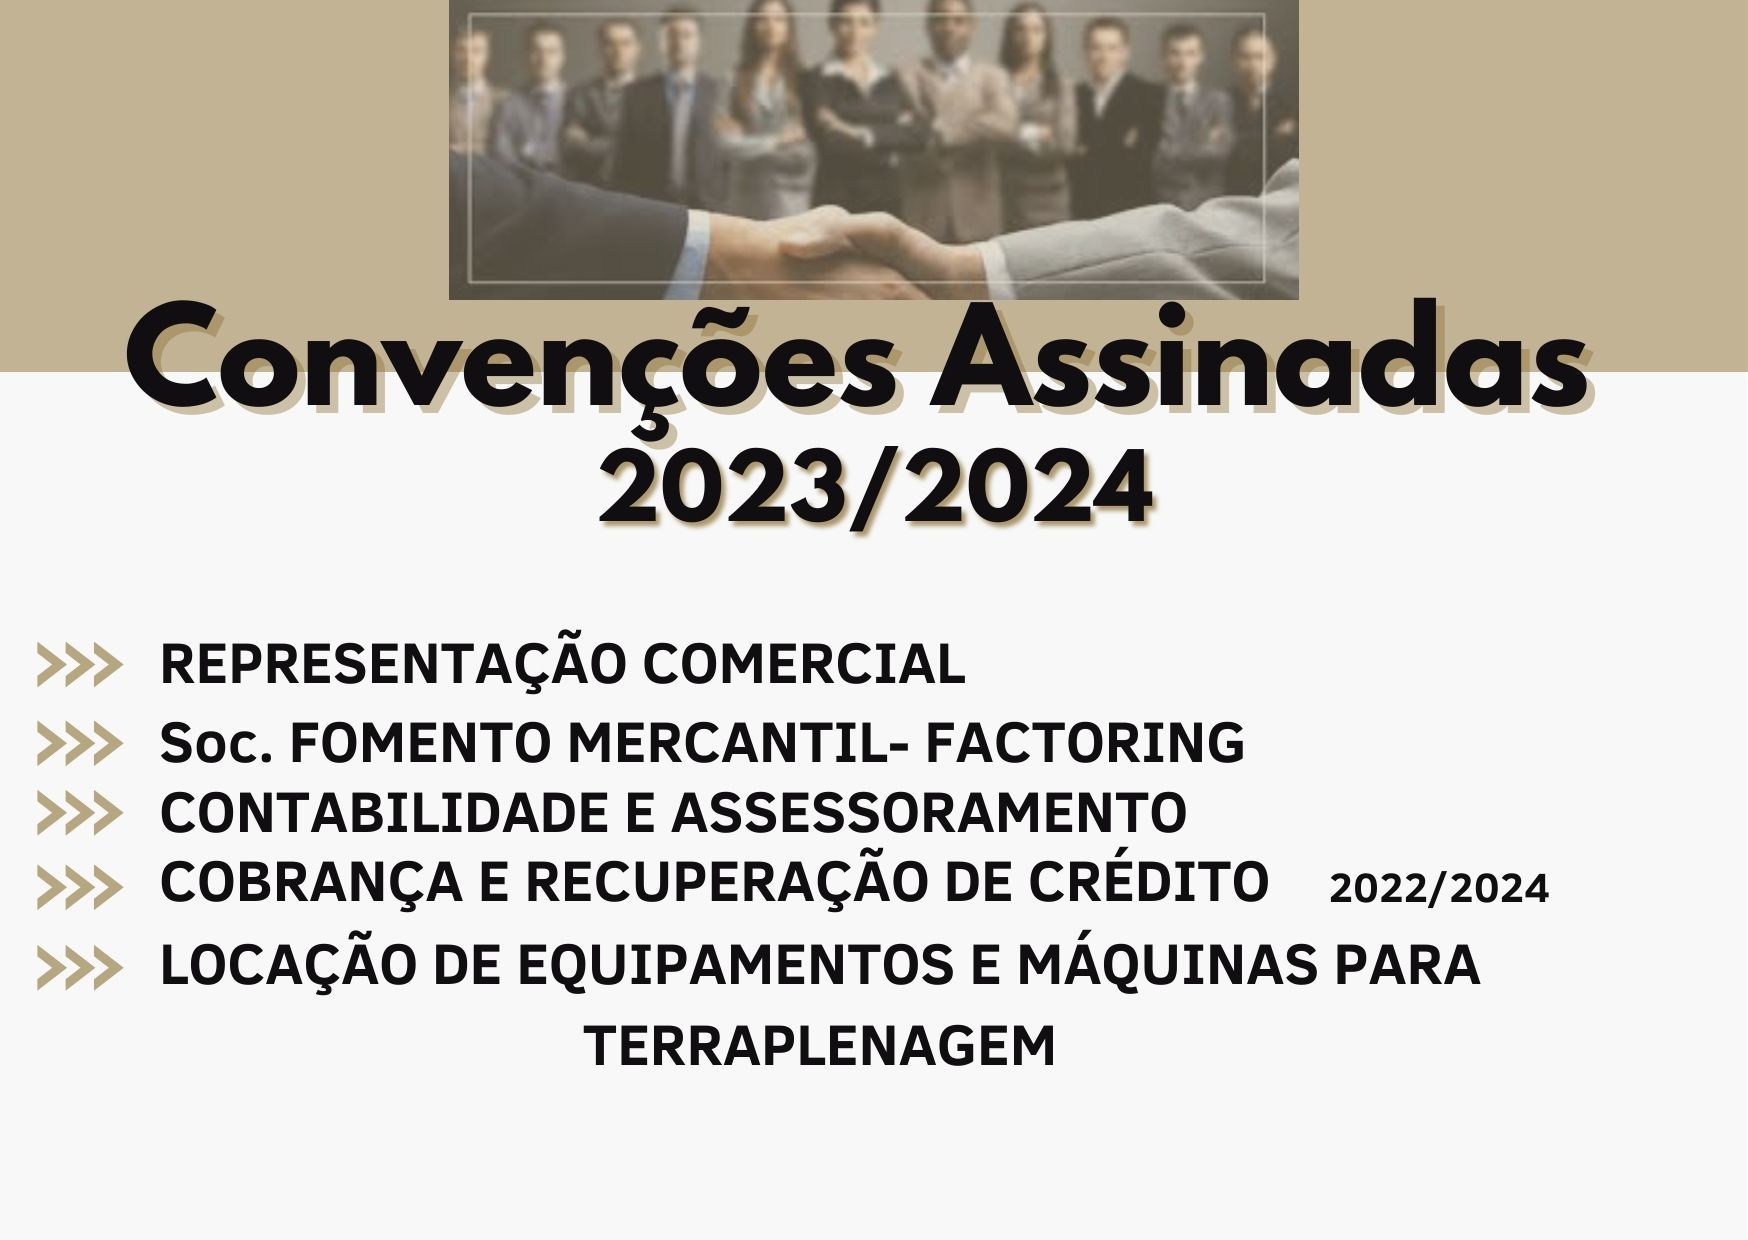 Convenções Assinadas 2023/2024